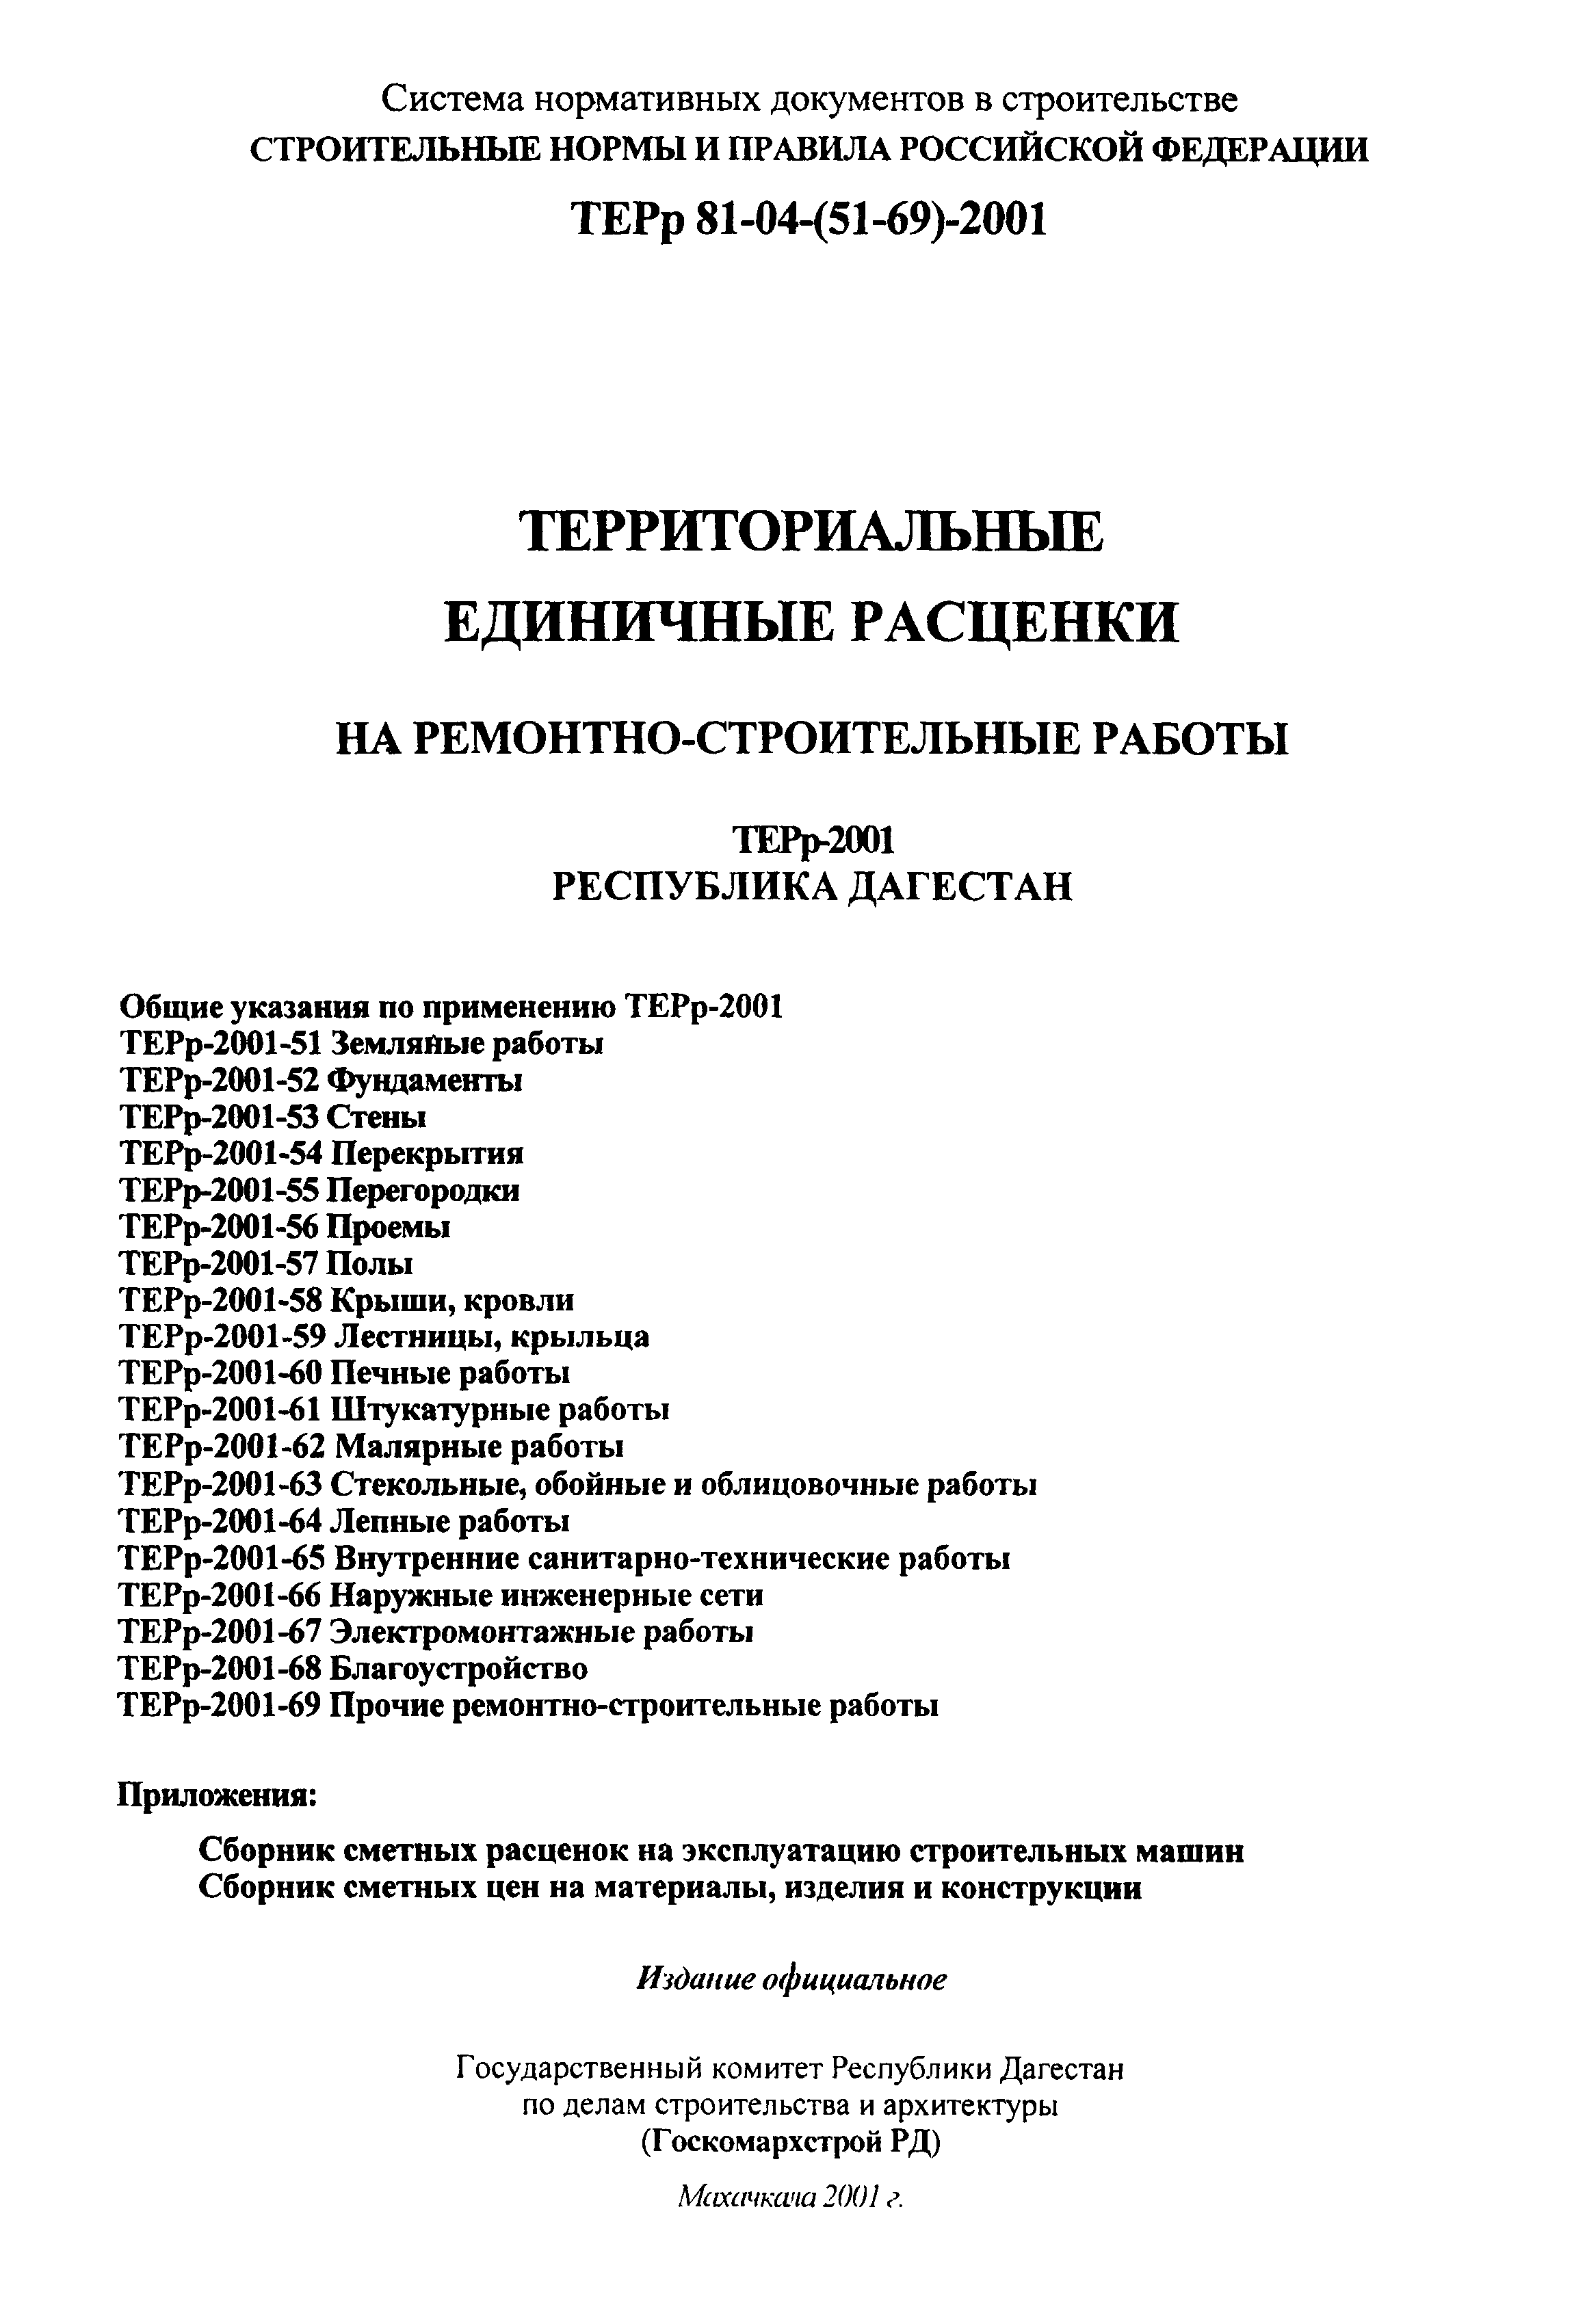 ТЕРр Республика Дагестан 2001-61